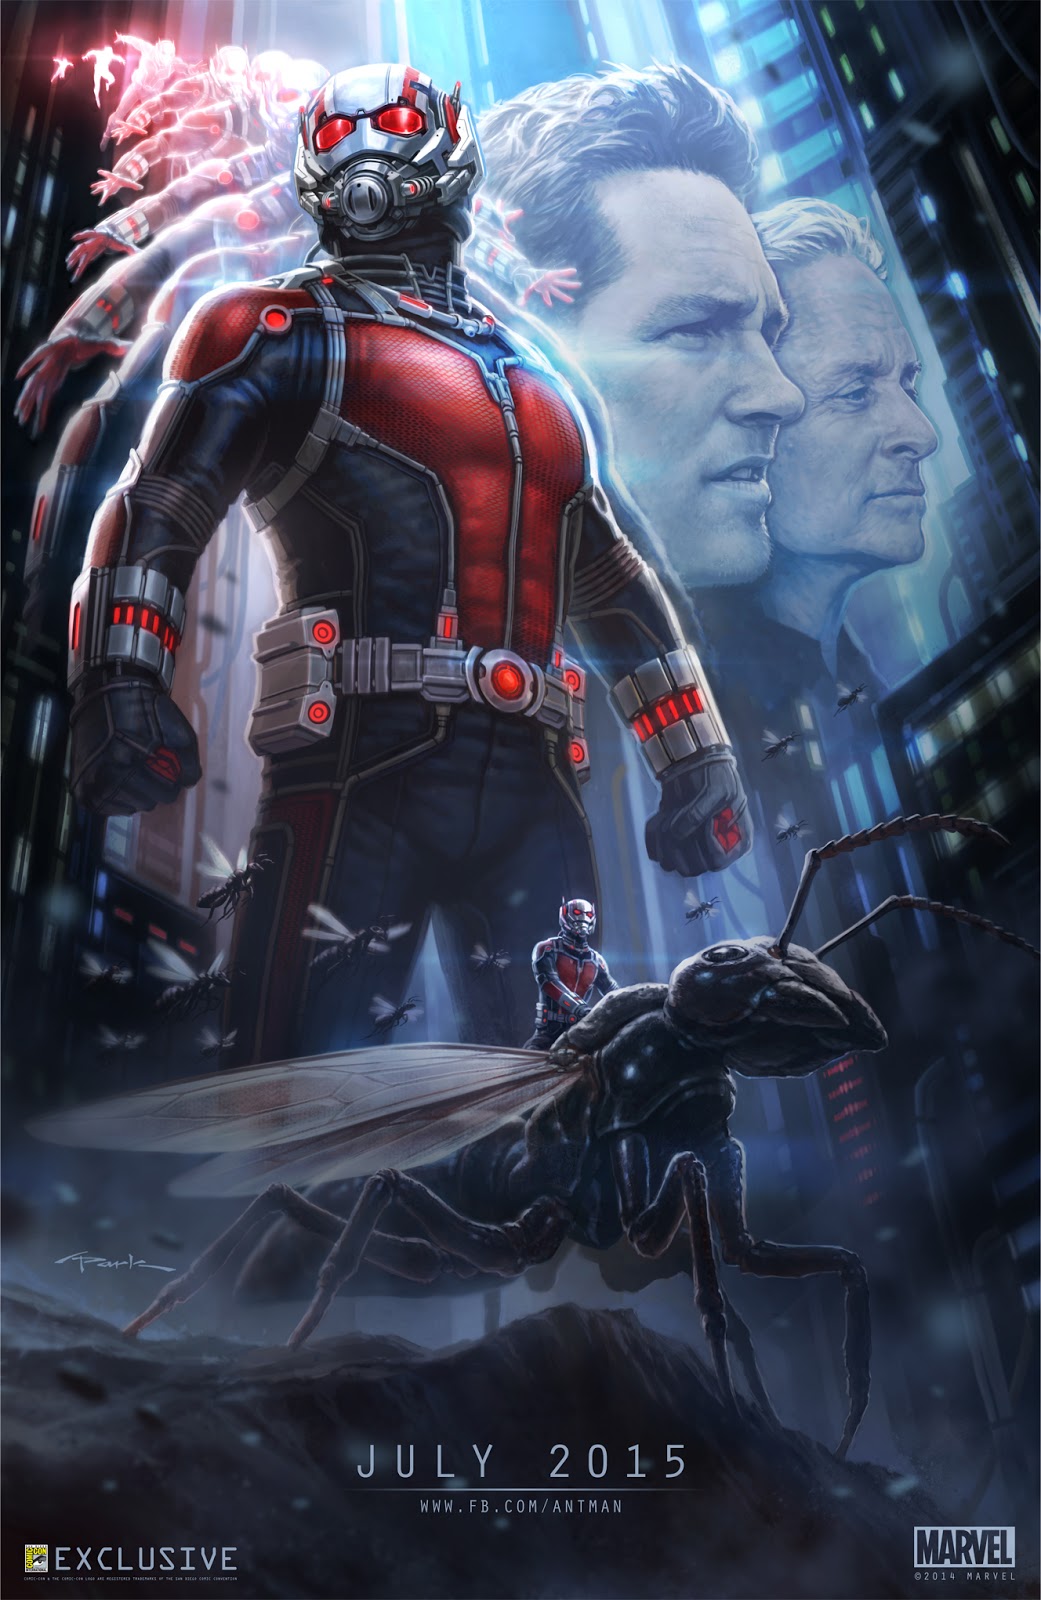 ｃｉａ こちら映画中央情報局です Ant Man コミックヒーロー映画の最新作 アントマン がリリースした ありんこサイズの予告編の予告編と 悪役イエロージャケットの姿を初めて 明らかにした新しいバナー ポスター